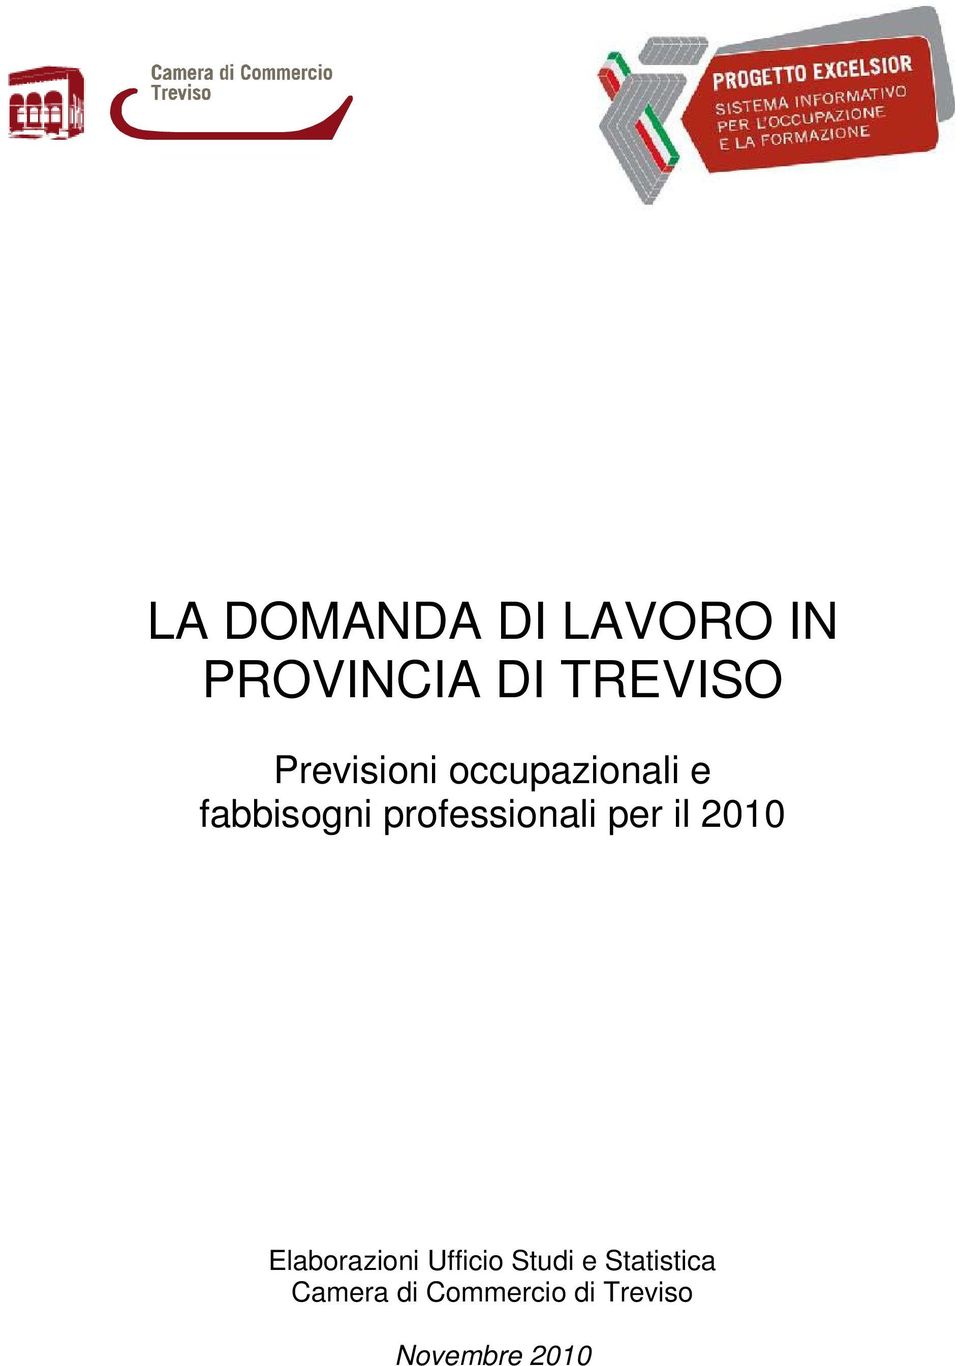 professionali per il 2010 Elaborazioni Ufficio